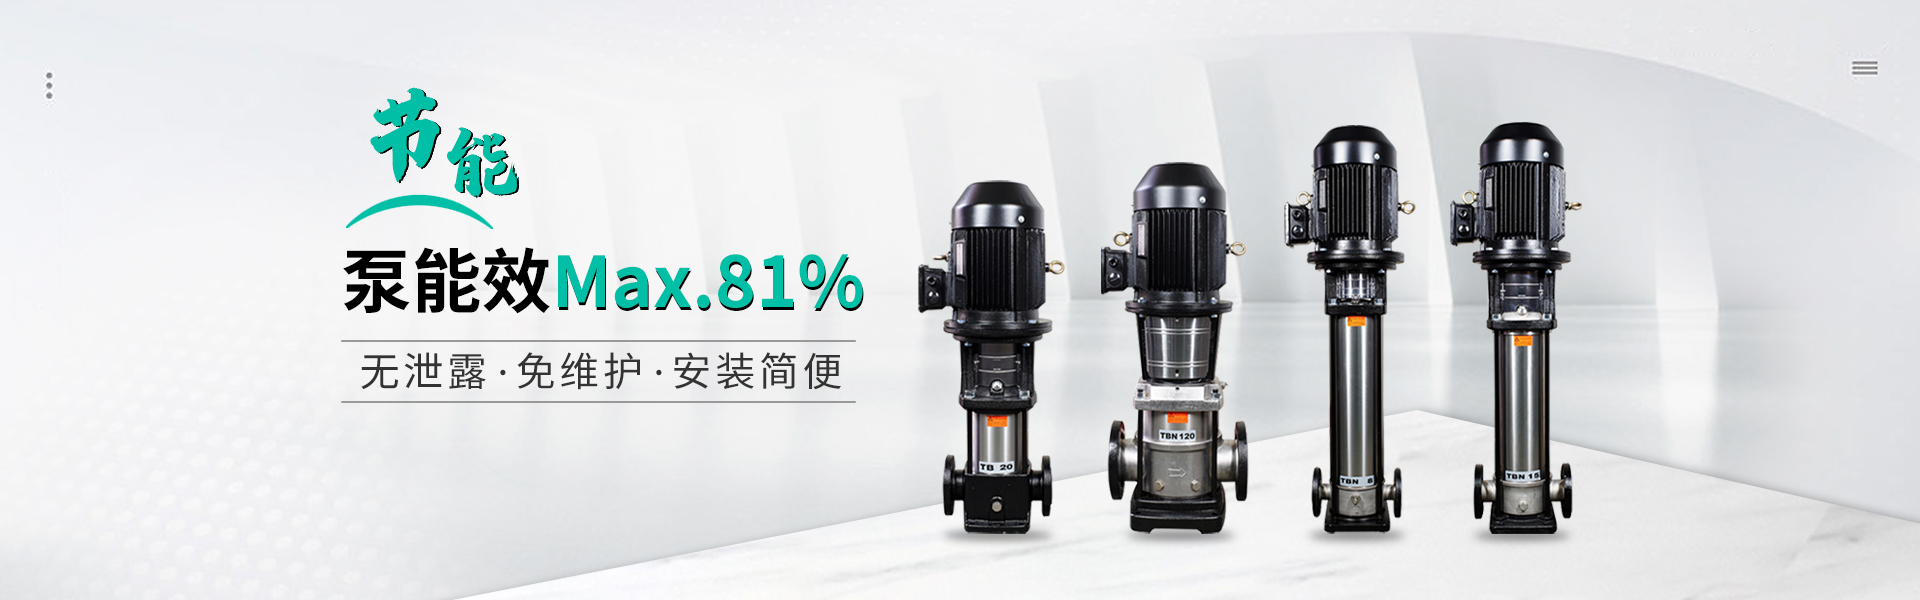 泵能效MAX.81%  无泄漏  免维护  安装简便